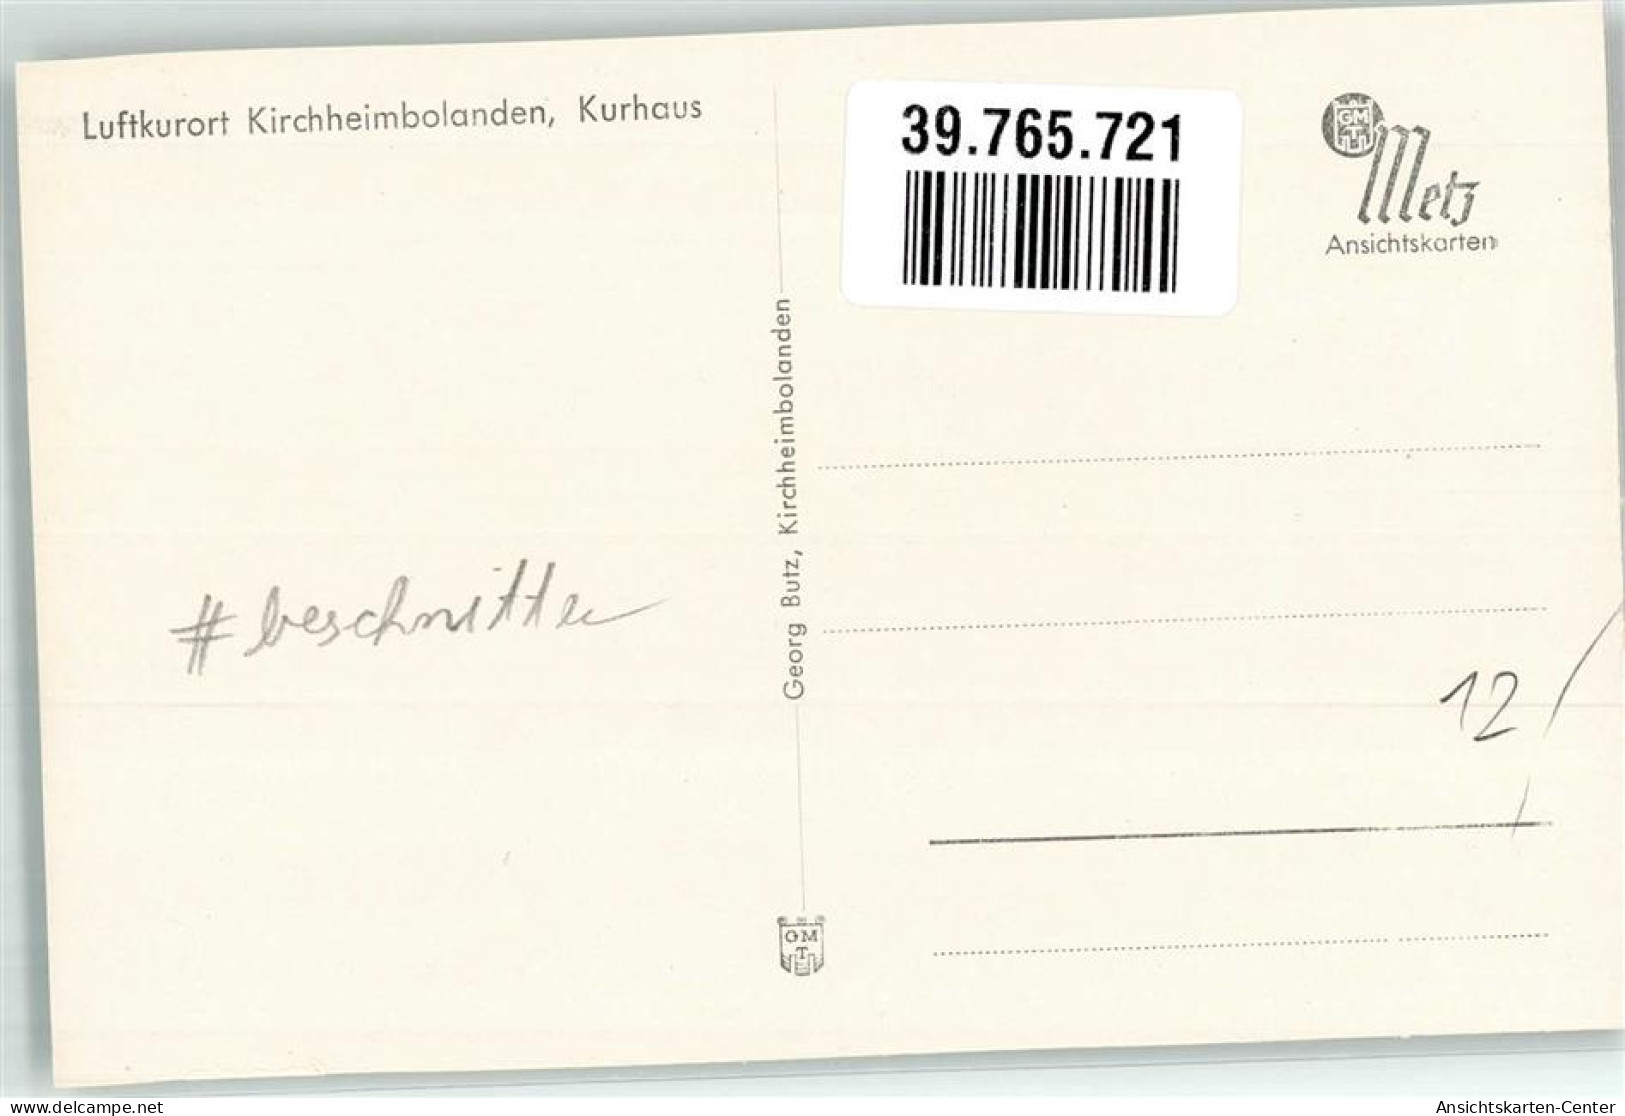 39765721 - Kirchheimbolanden - Kirchheimbolanden